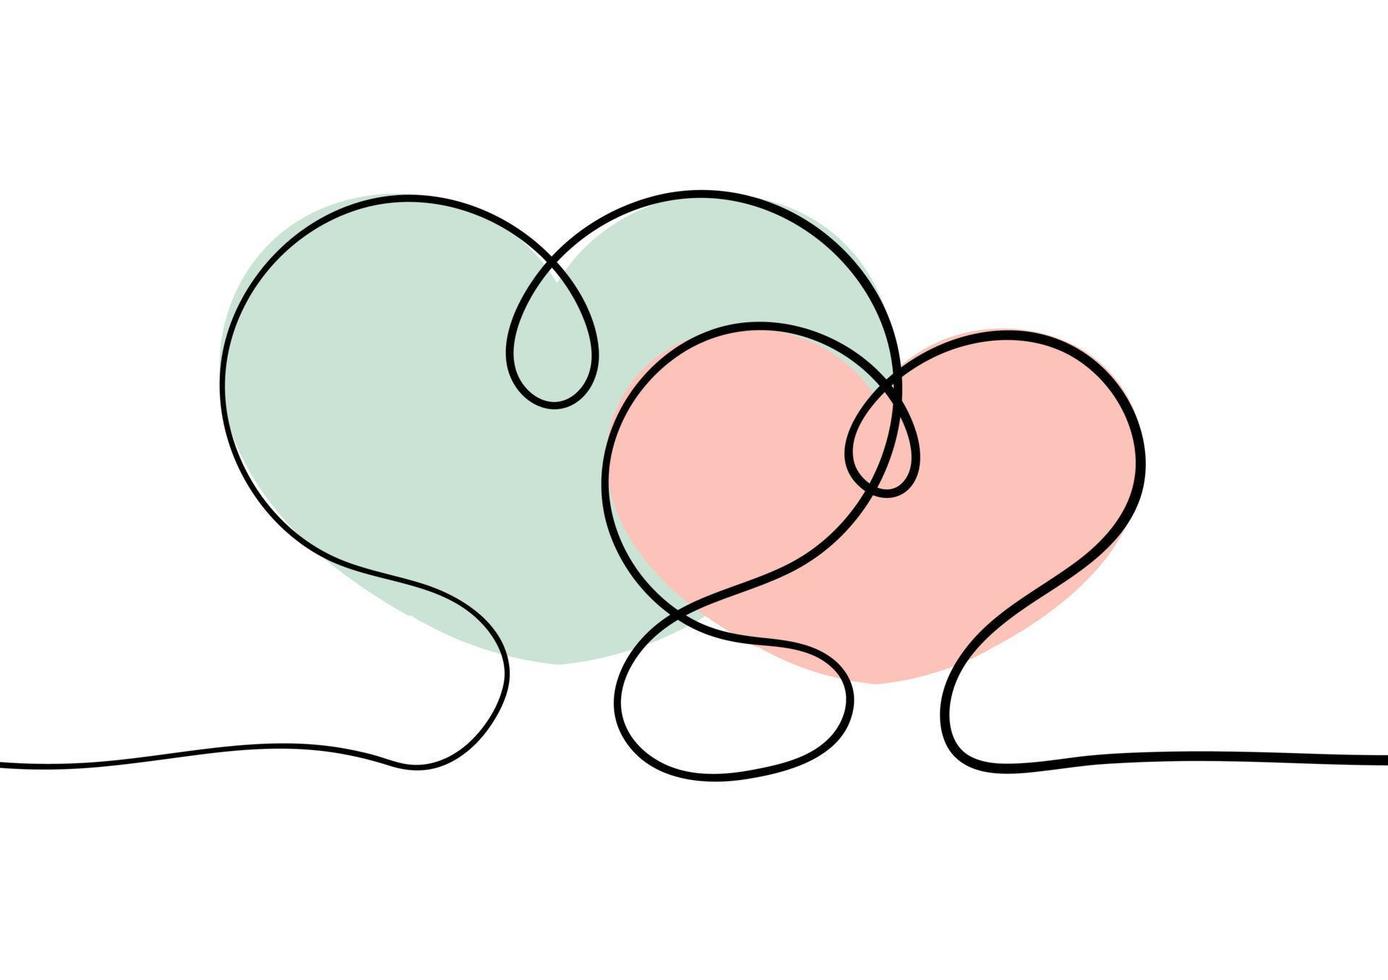 en hjärtbakgrund med en design av två hjärtan som symboliserar två människor som älskar varandra vektor